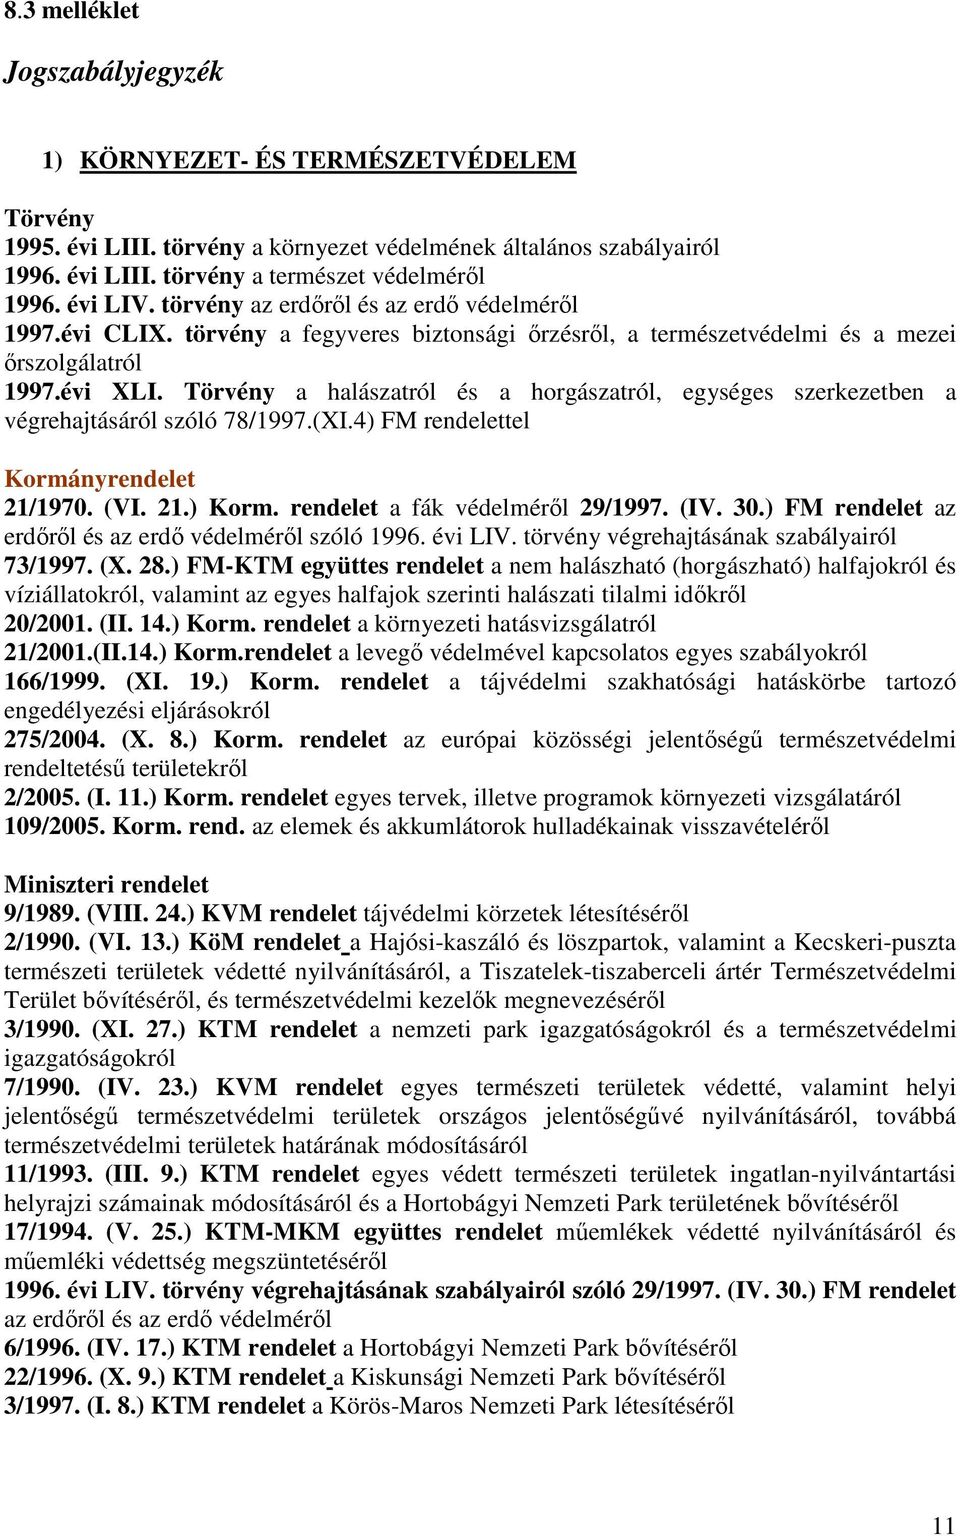 Törvény a halászatról és a horgászatról, egységes szerkezetben a végrehajtásáról szóló 78/1997.(XI.4) FM rendelettel Kormányrendelet 21/1970. (VI. 21.) Korm. rendelet a fák védelmérıl 29/1997. (IV.